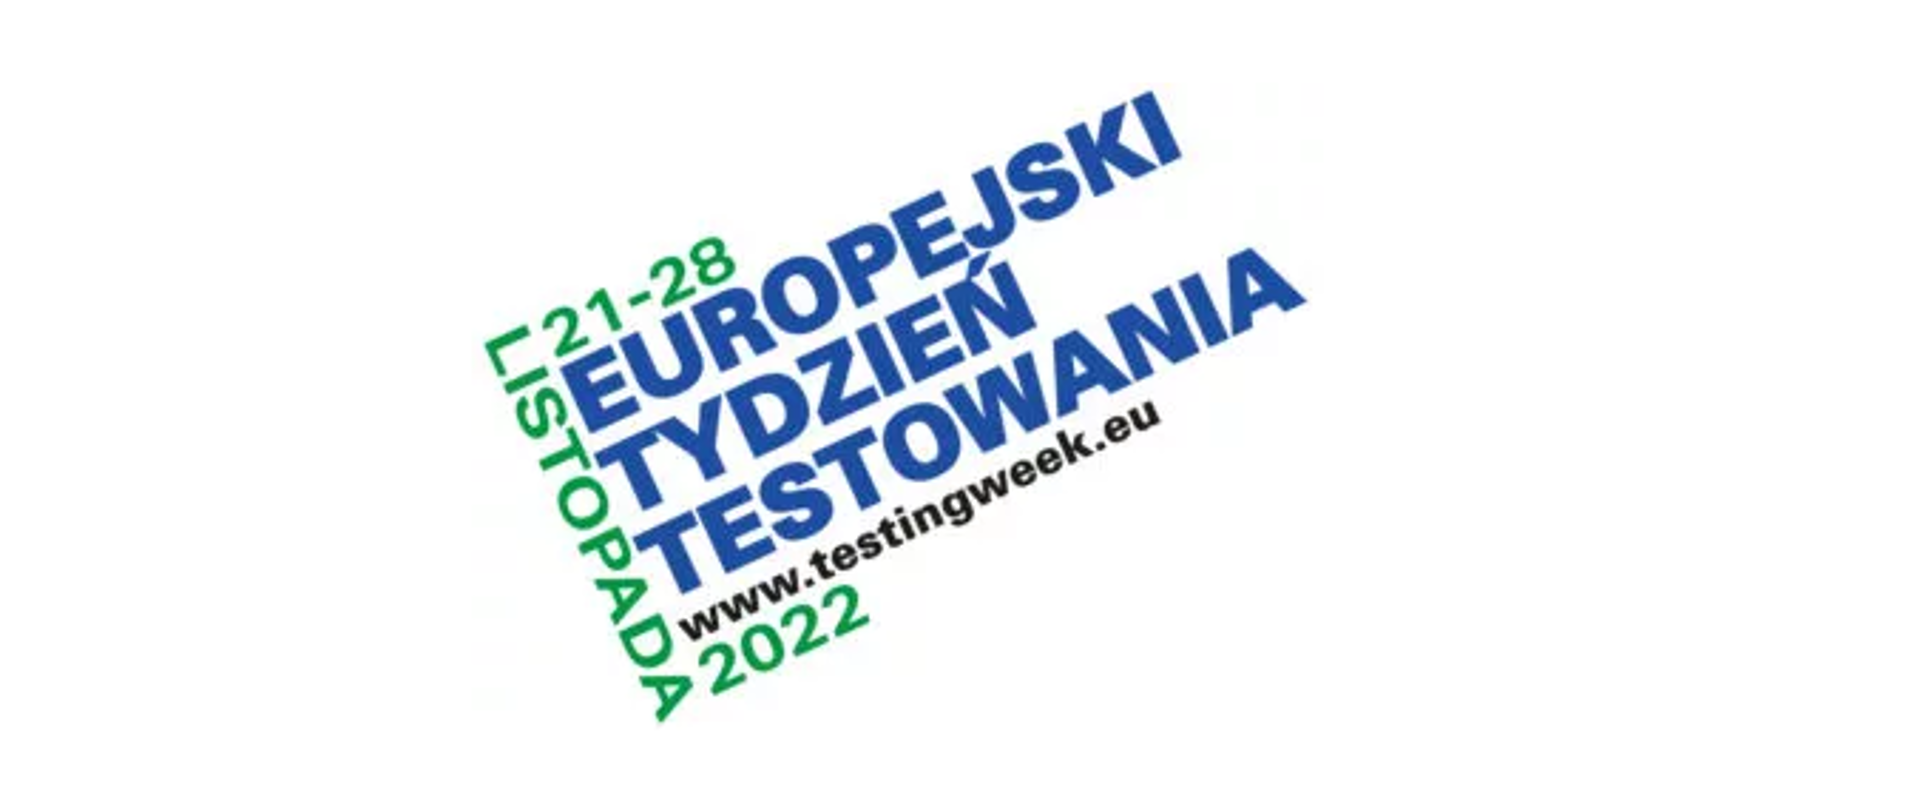 Grafika przedstawia niebieski napis EUROPEJSKI TYDZIEŃ TESTOWANIA oraz zieloną datę 21-28 listopada oraz adres strony internetowej www.testingweek.eu